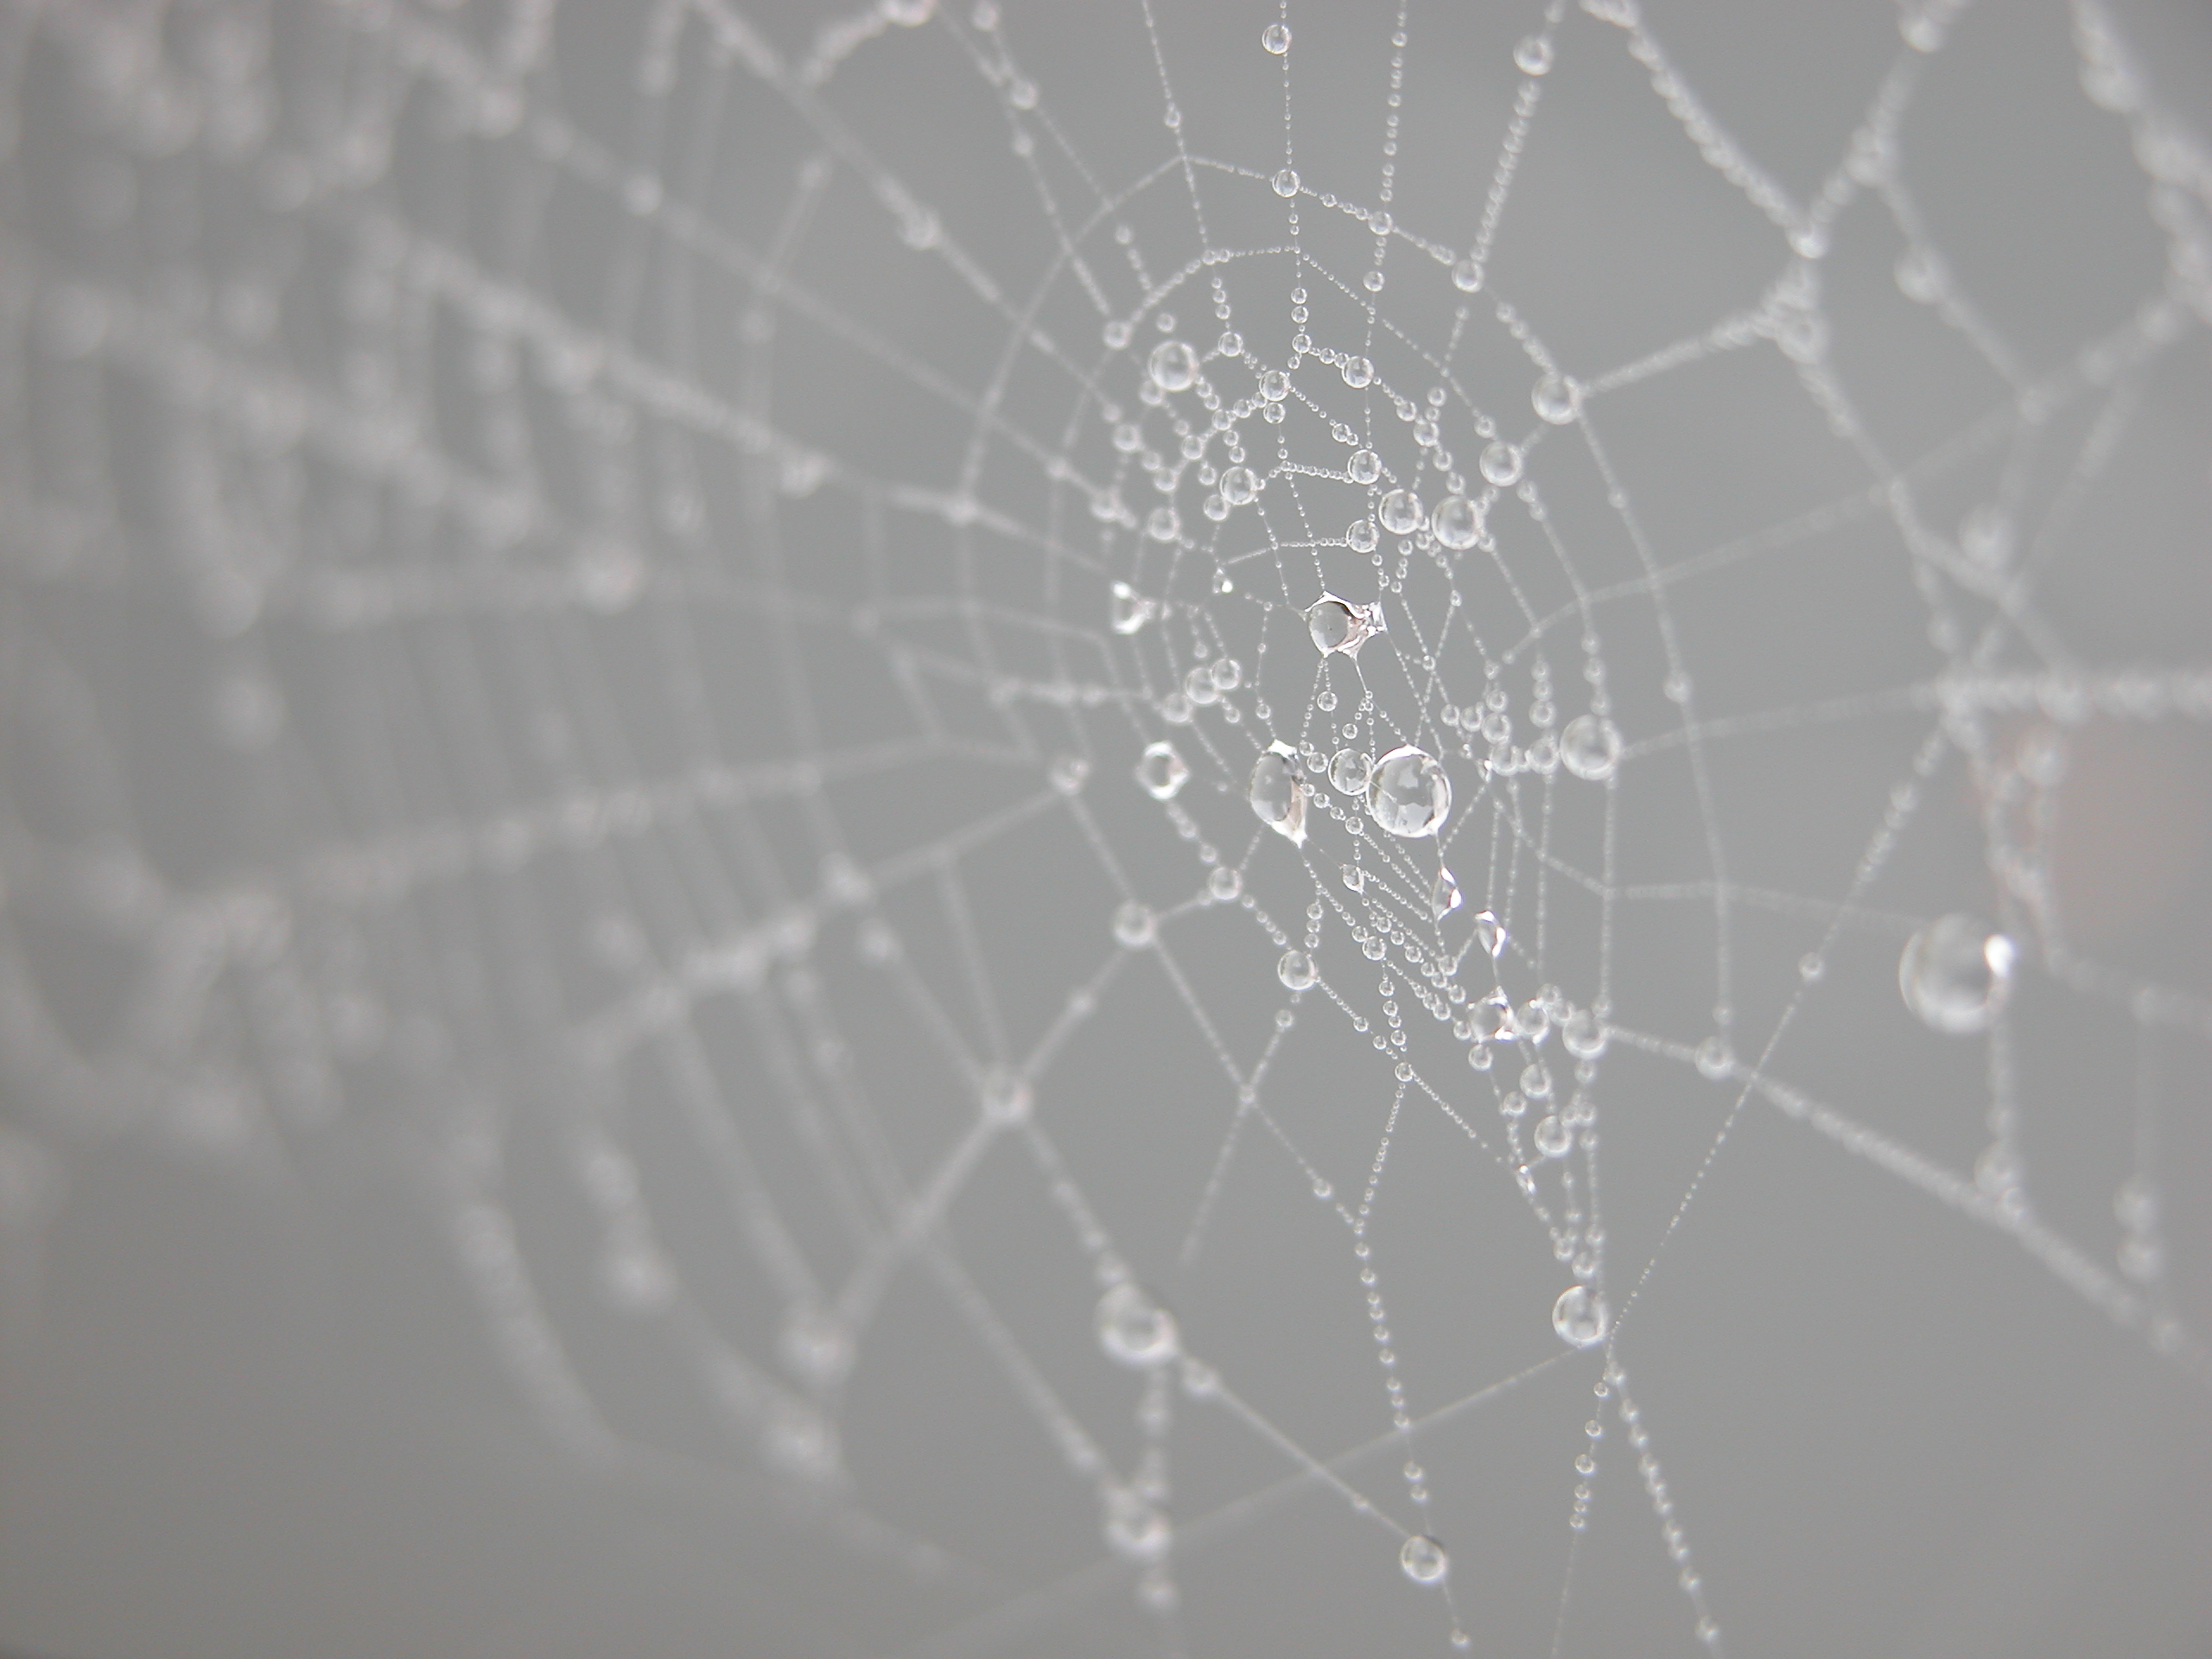 webs web spiderweb moist dew drops water threads wires